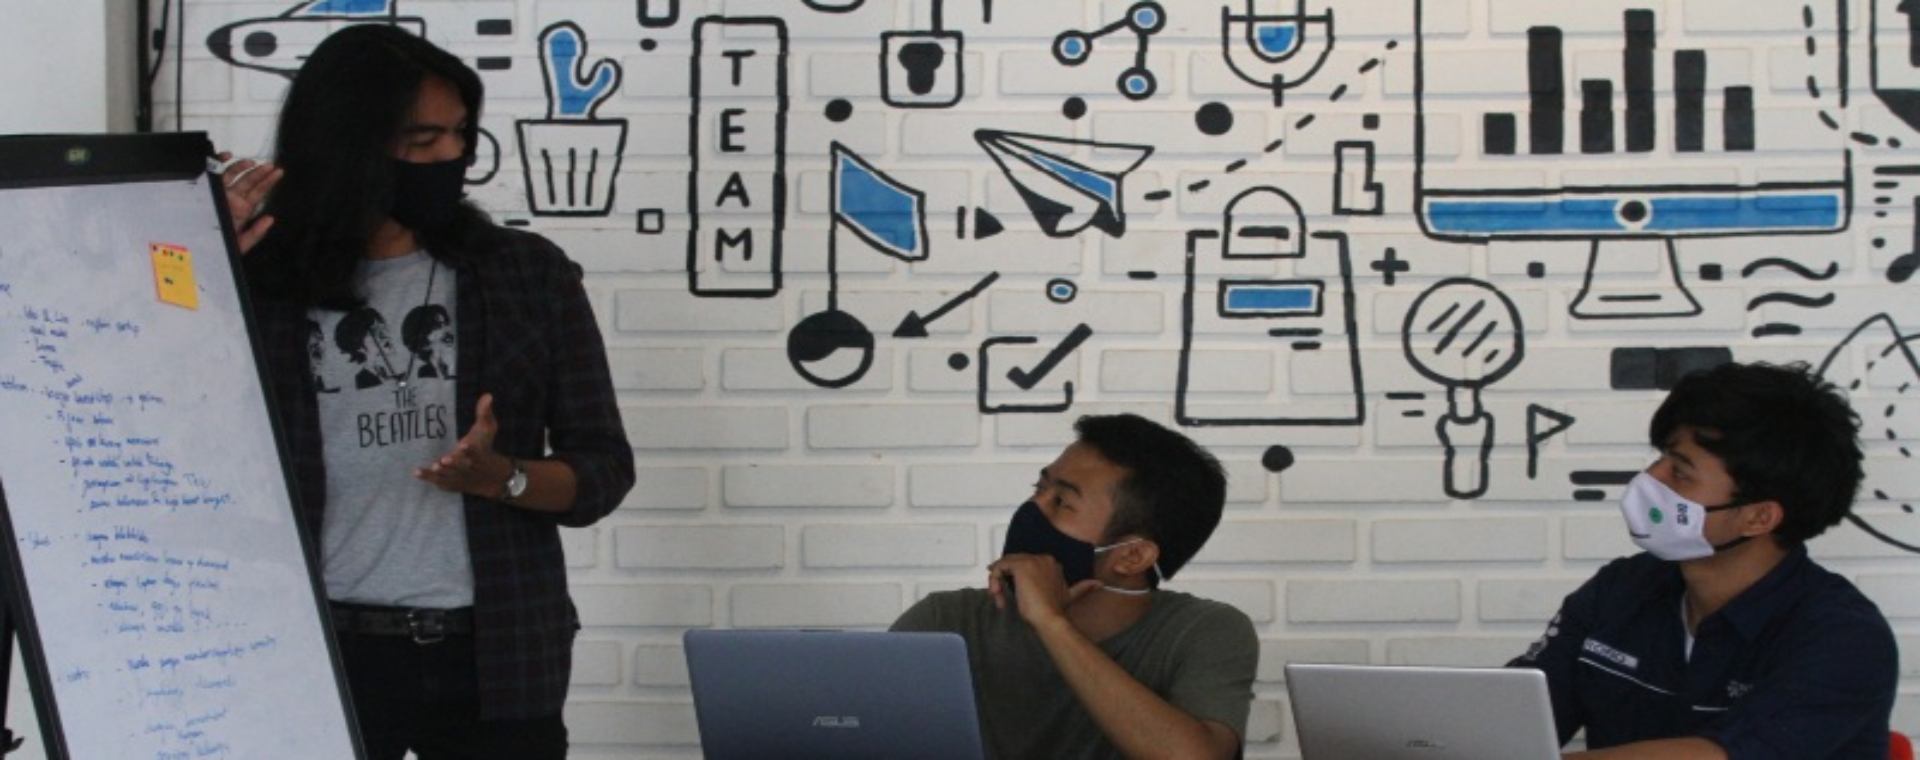 Pengelola perusahaan rintisan digital atau startup mengoperasikan program pelayanan di sebuah kantor bersama berbasis jaringan internet (Coworking space) Ngalup.Co di Malang, Jawa Timur, Senin (12/10/2020). - ANTARA FOTO/Ari Bowo Sucipto